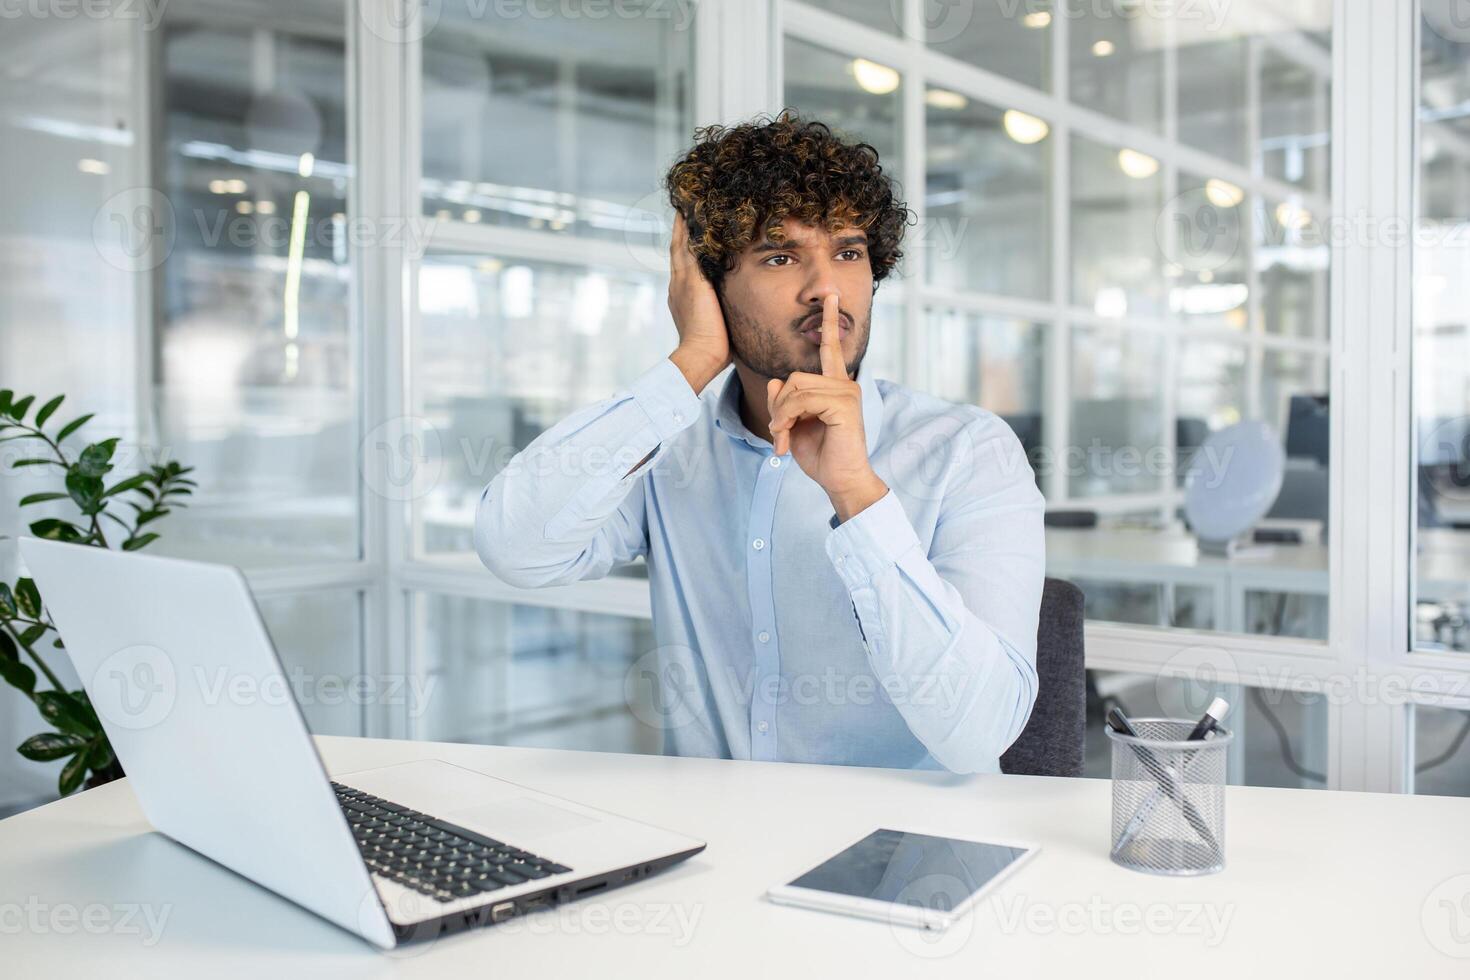 jong professioneel Mens in een blauw overhemd zittend Bij een wit kantoor bureau, maken een stilte gebaar met een vinger naar lippen, omringd door modern kantoor omgeving. foto